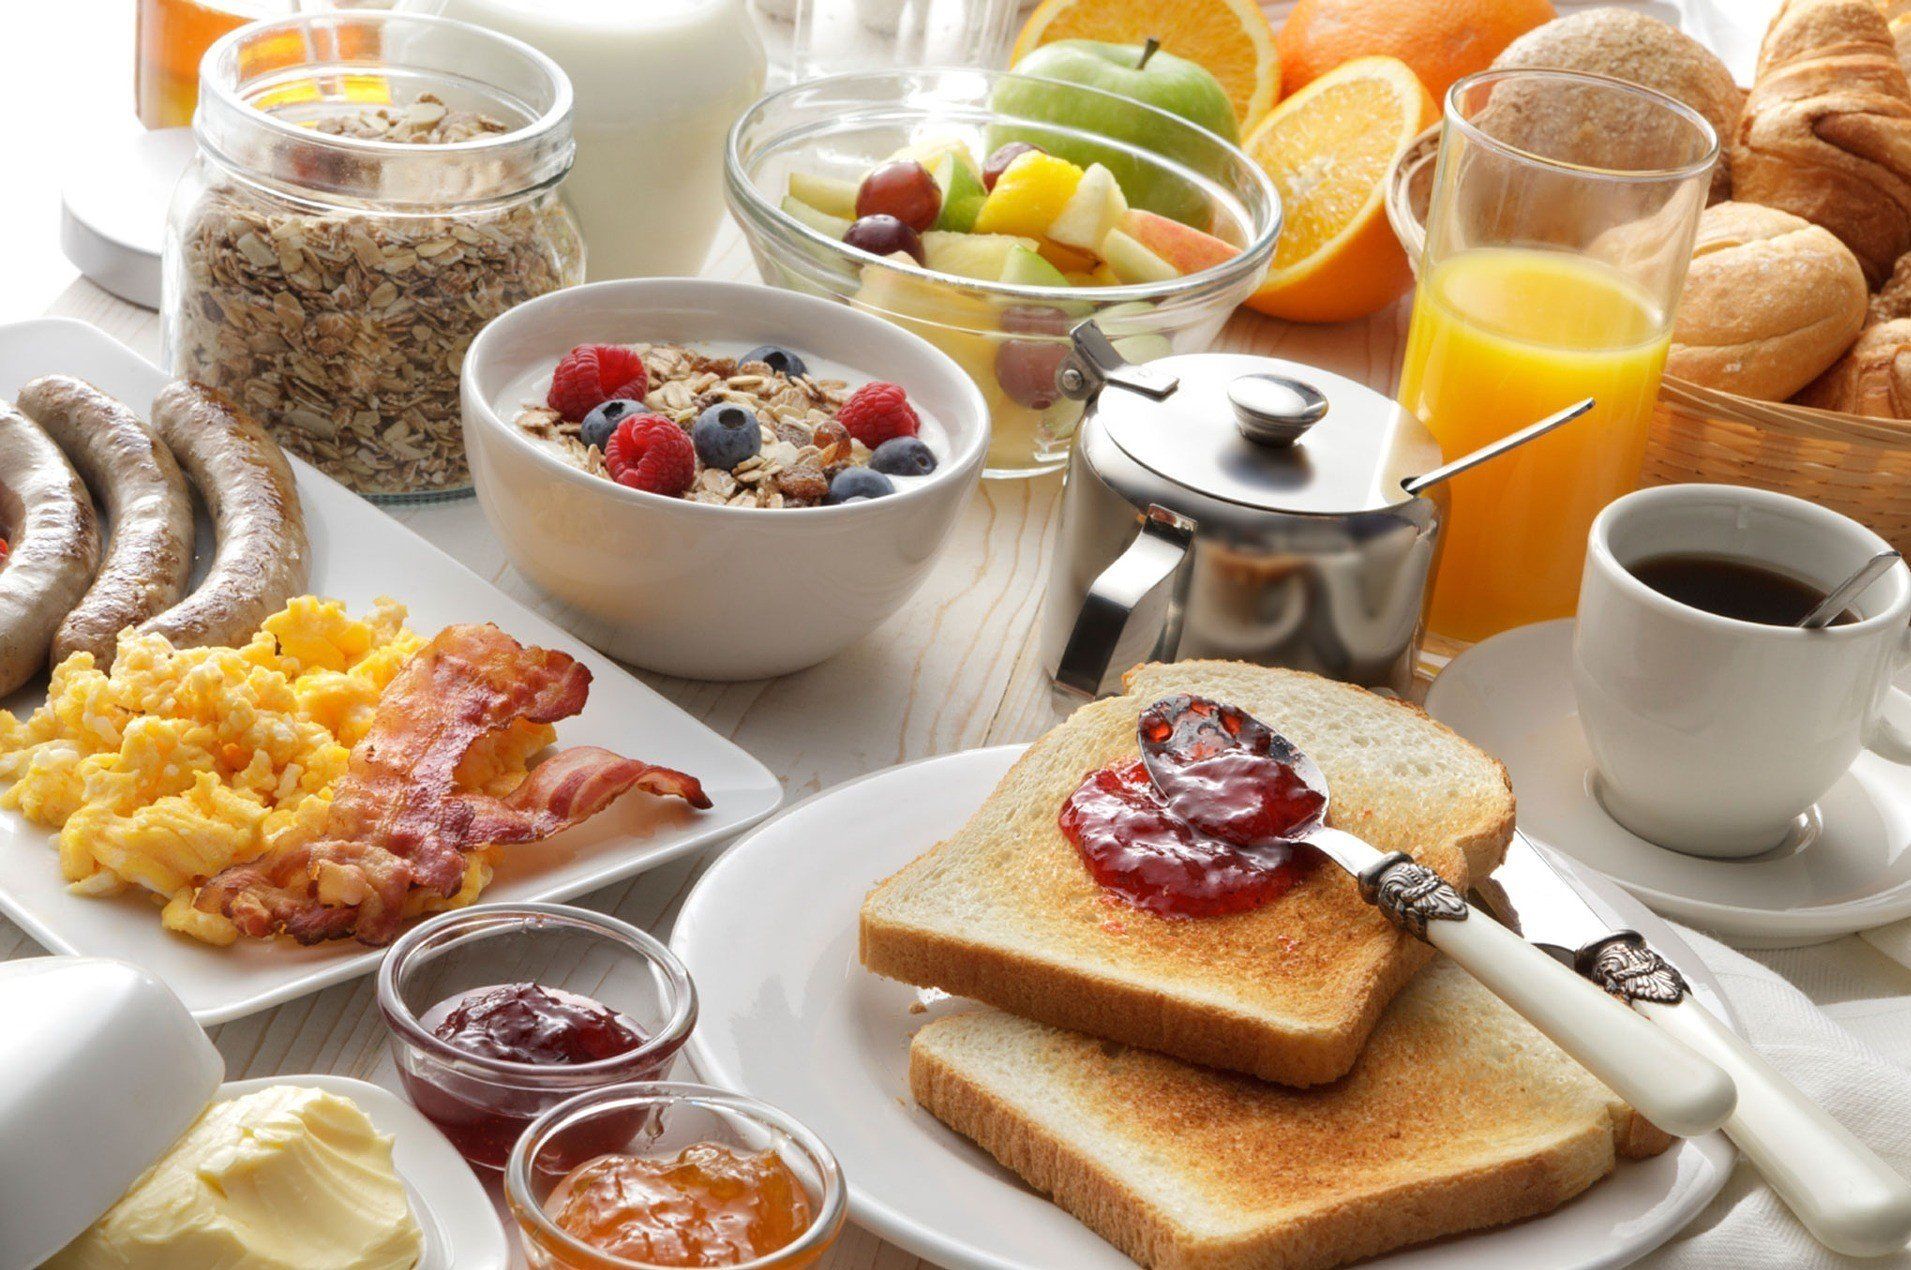 Gipfeli, Früchte, Tee, Kaffee, Orangensaft und mehr: Das Frühstücksbuffet im Hotel Egerkingen stärkt für den Tag